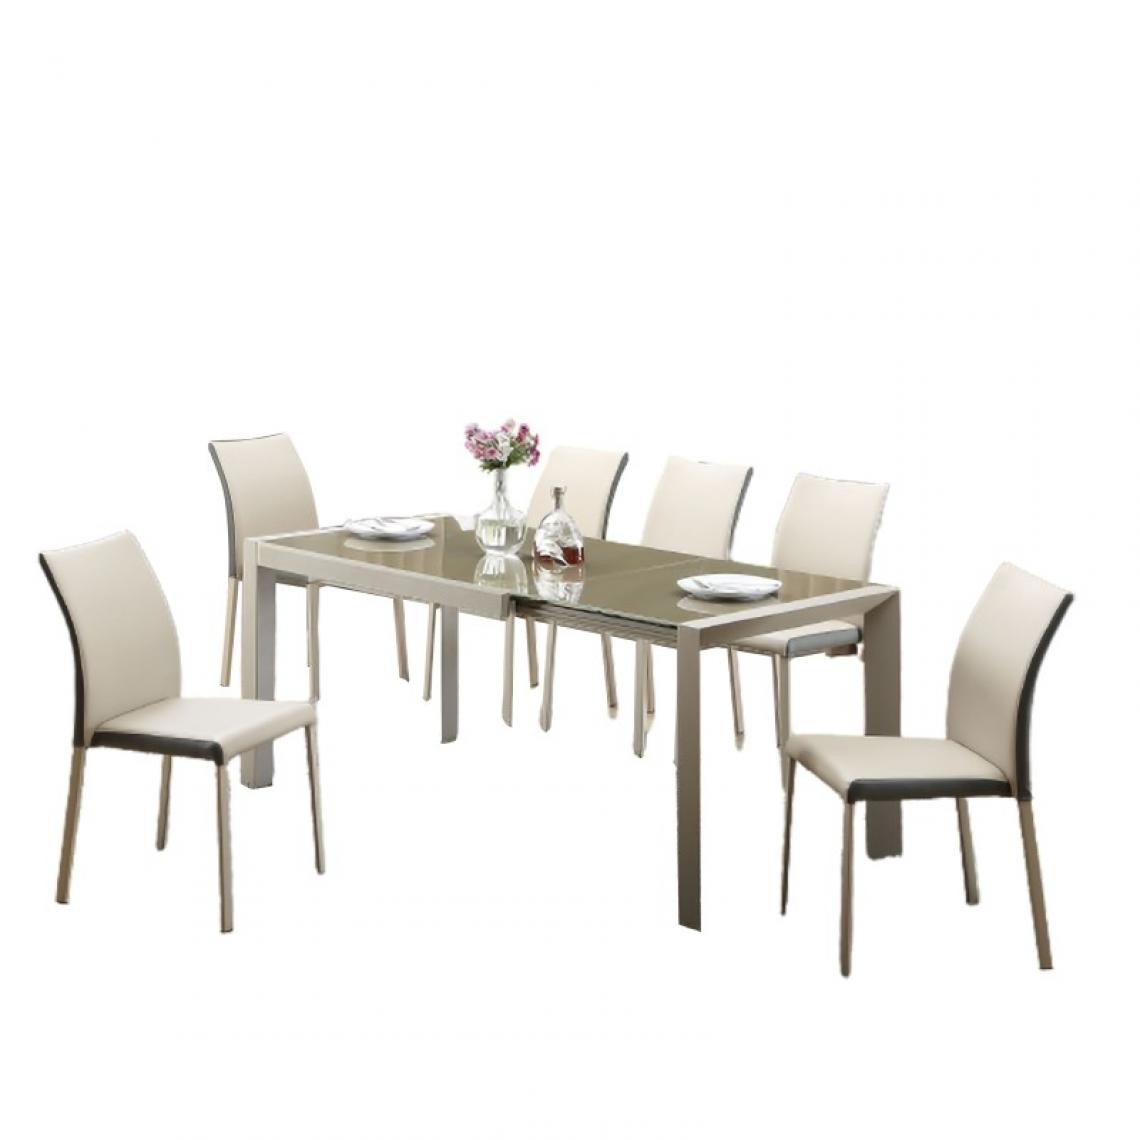 Carellia - Table à manger 122-182 cm x 82 cm x 76 cm - Brun clair/Beige - Tables à manger